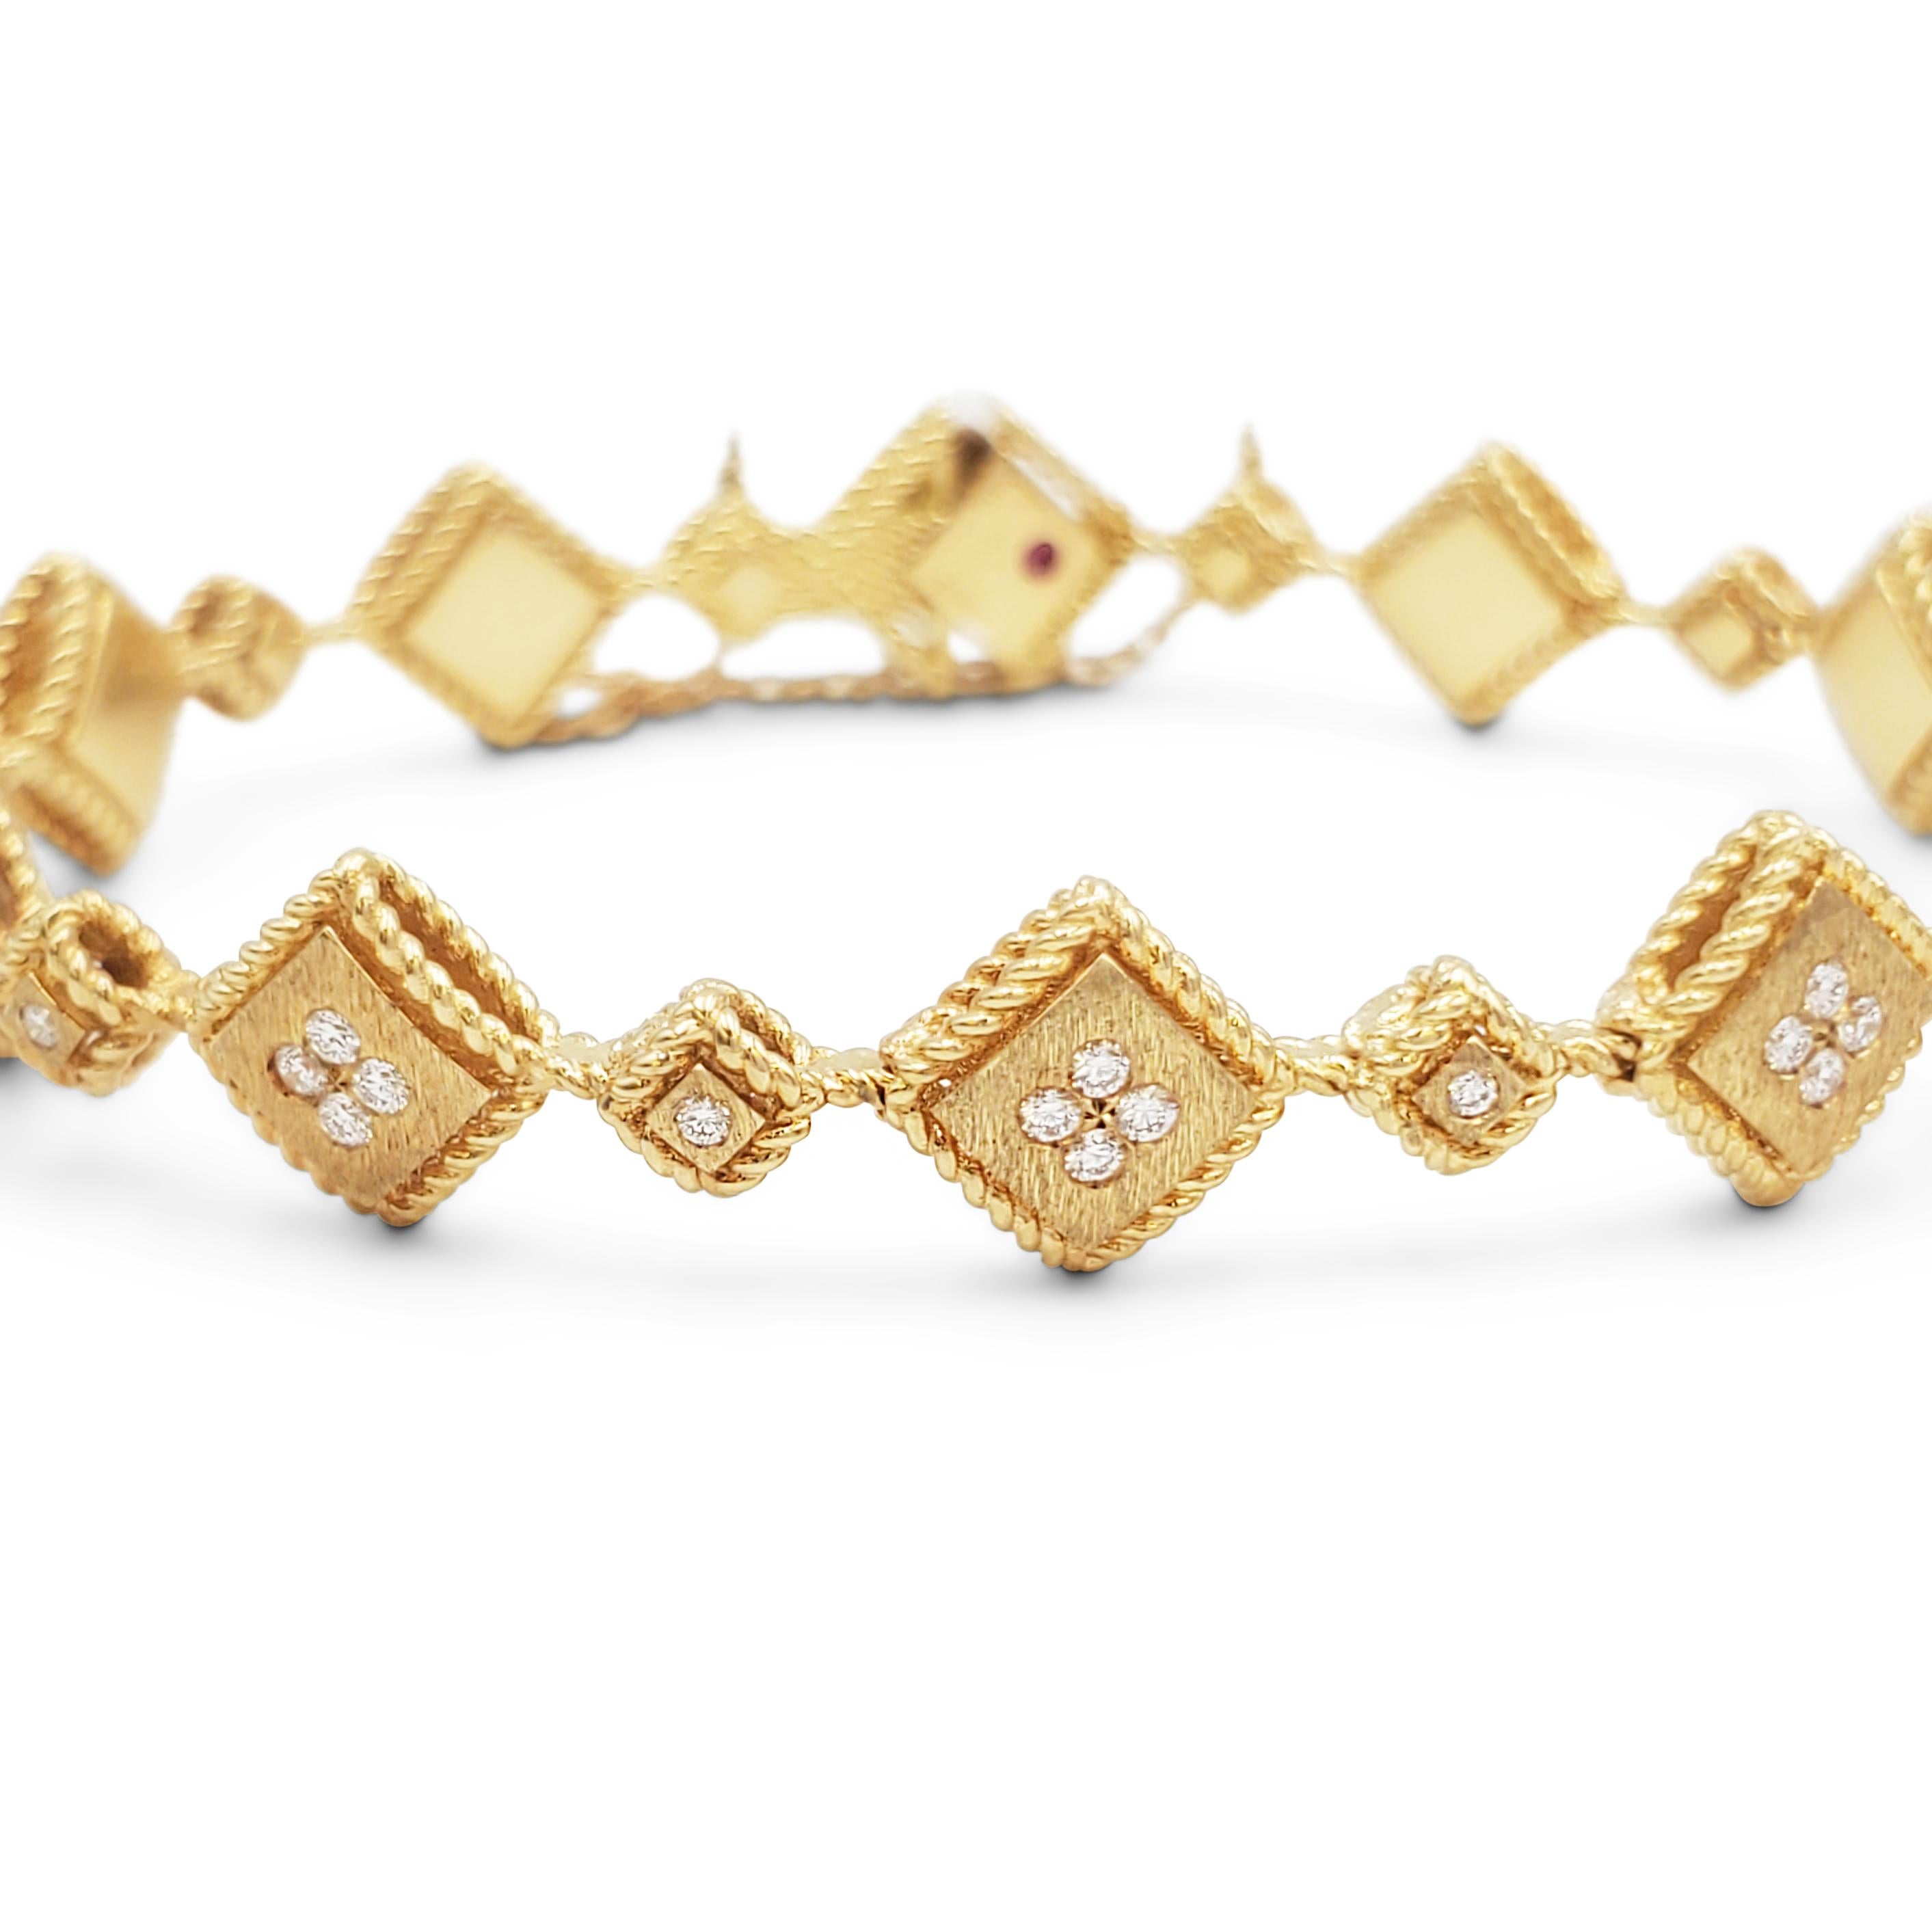 Authentique bracelet Roberto Collection S de la collection Ducale en or jaune 18 carats.  Composé de maillons alternant de grands et petits carrés d'or satiné avec des bordures en corde d'or poli. Chaque maillon est rehaussé de diamants ronds de